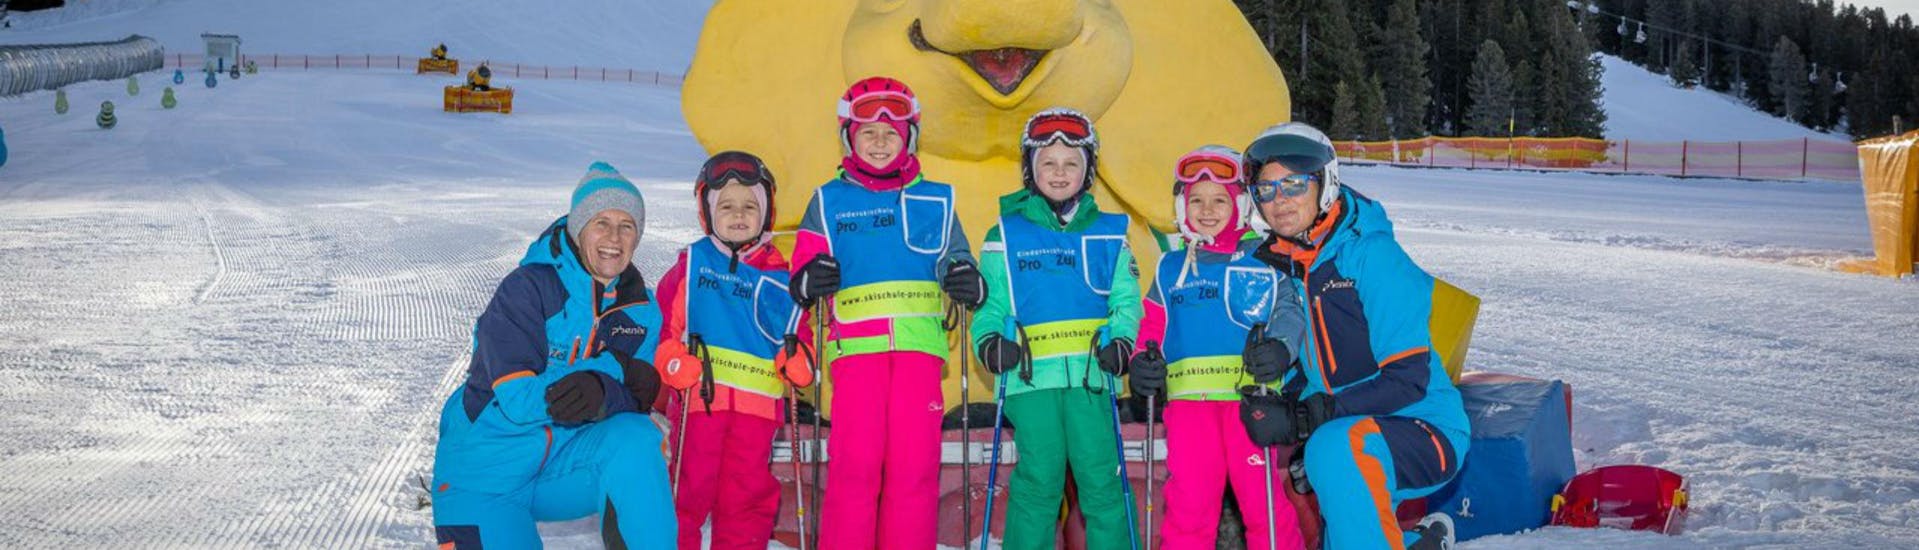 Een groep kinderen en hun twee skileraren van de skischool Skischule Pro Zell in Zell am Ziller poseren voor een foto in het Kinderland gebied tijdens hun Kids Skilessen "Bambini" (3-5 jaar).